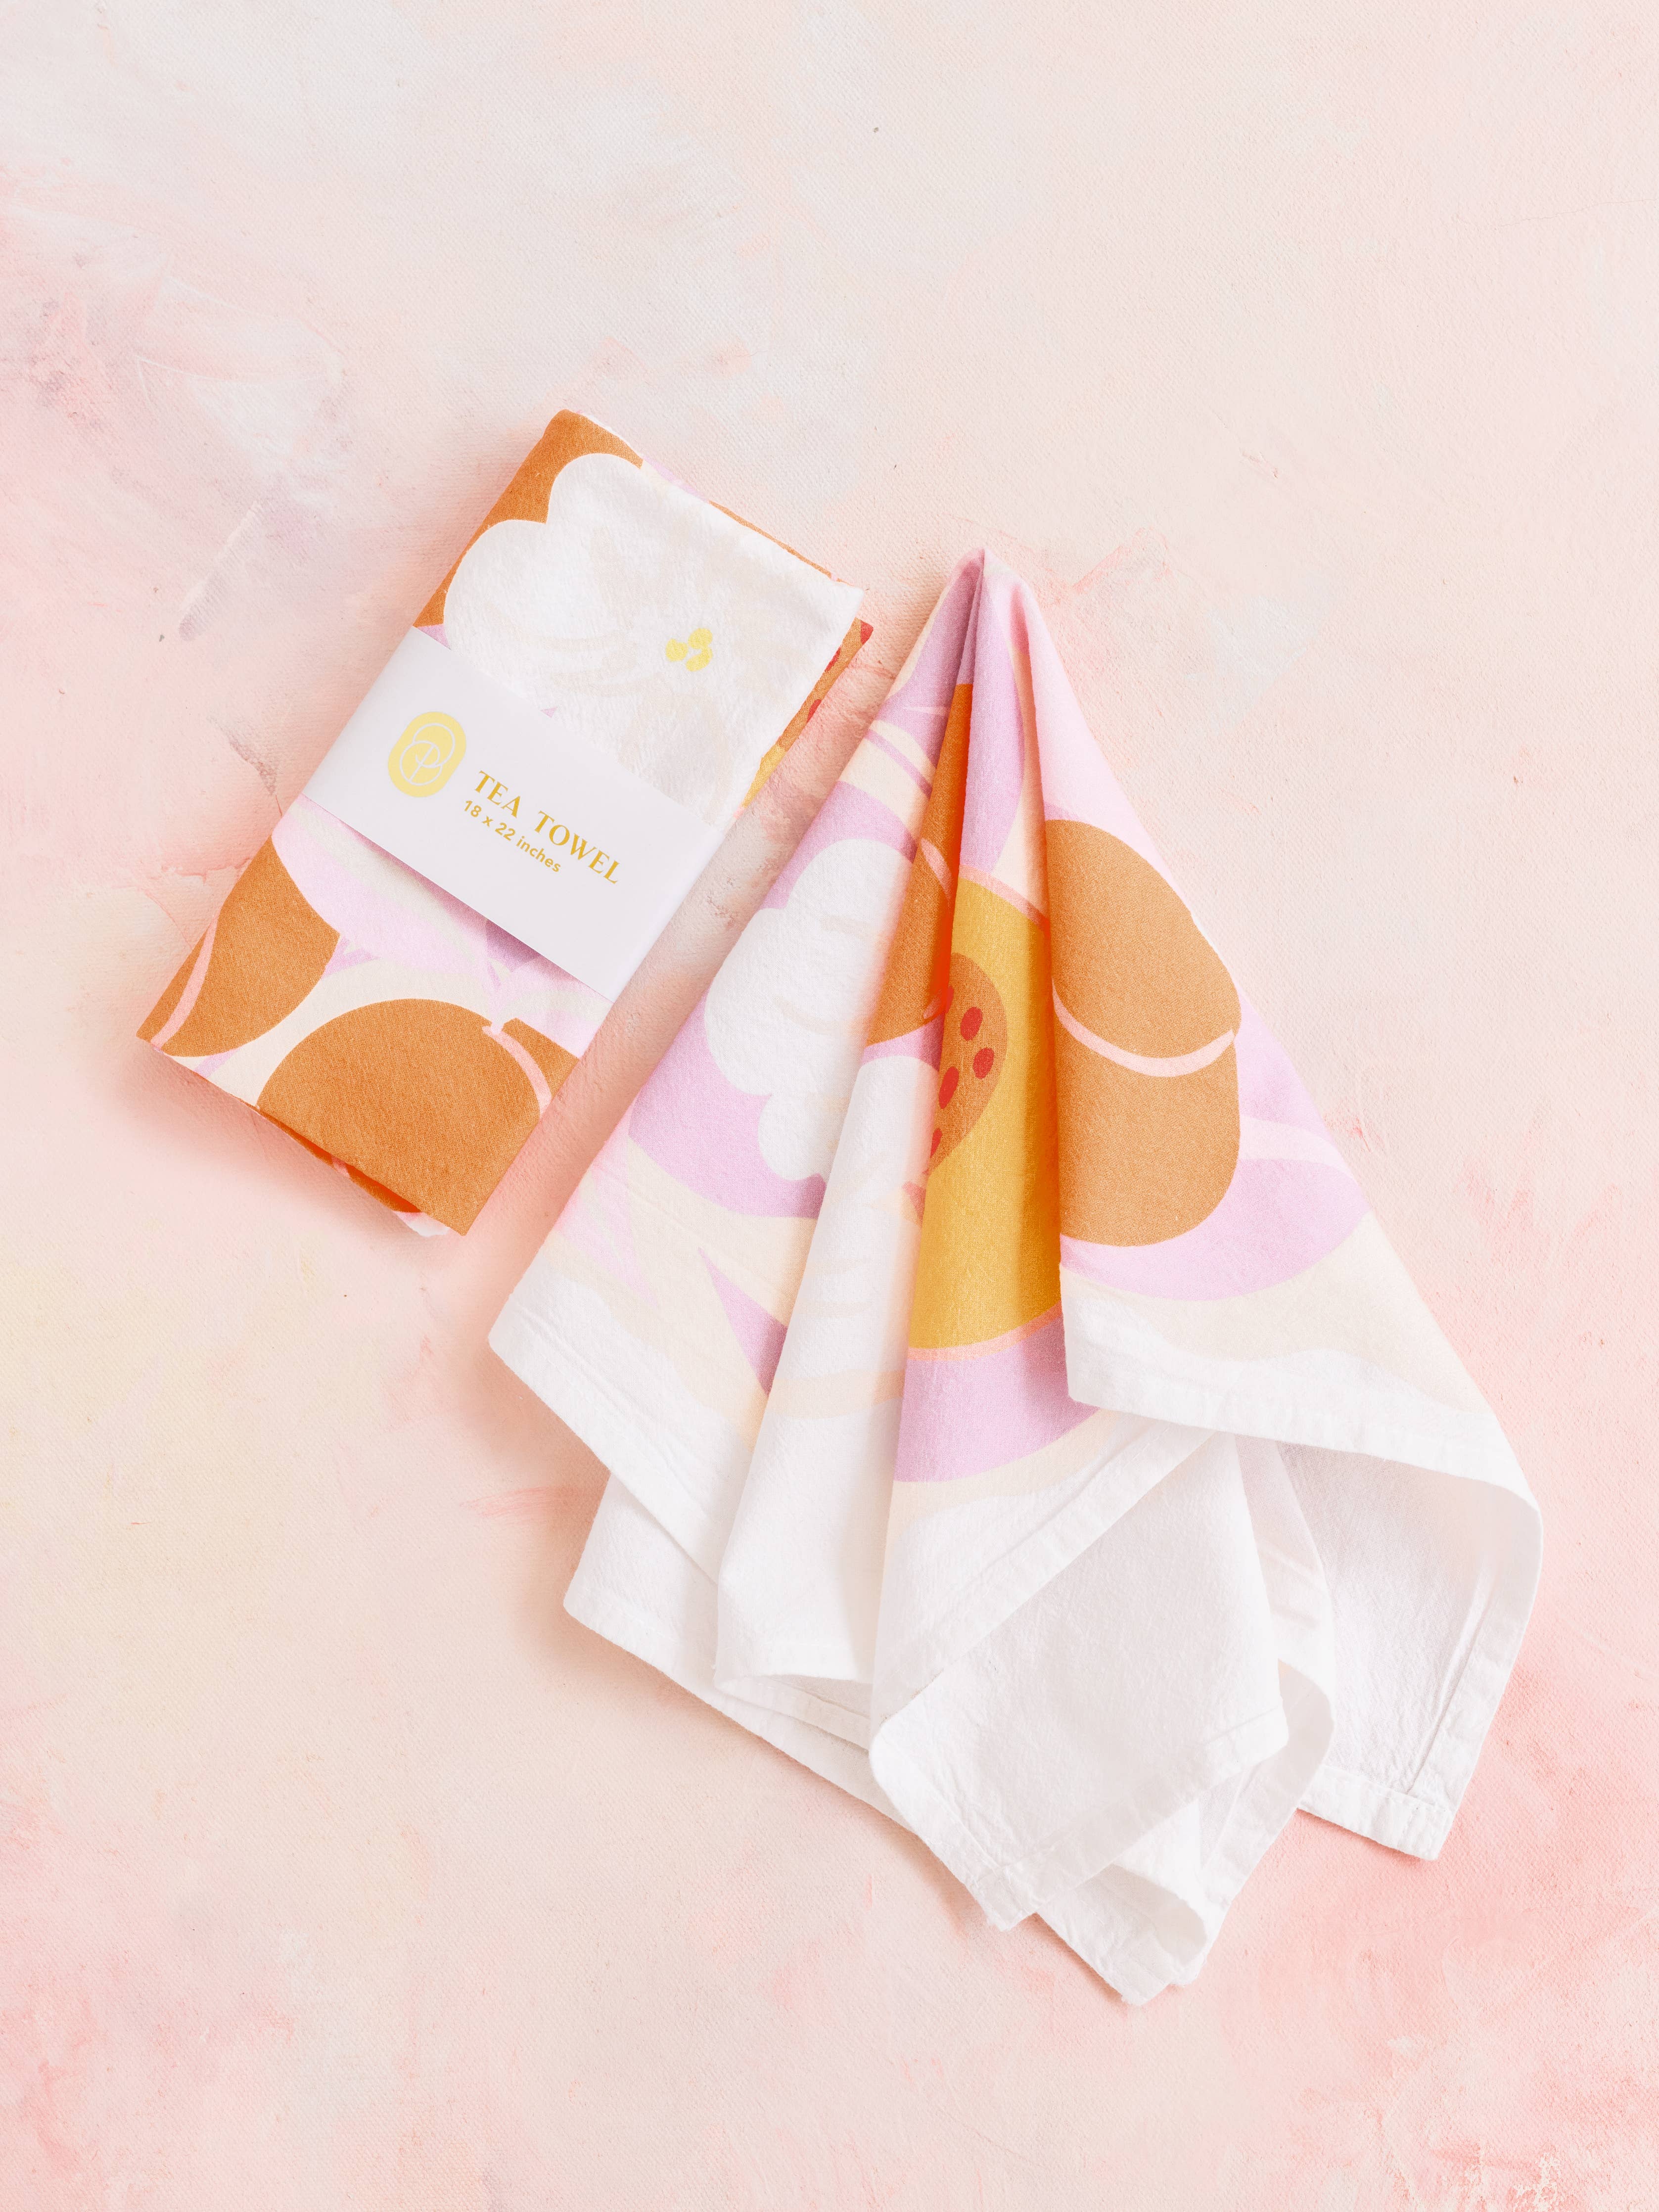 Peachy Keen Pastel Fruit Tea Towel